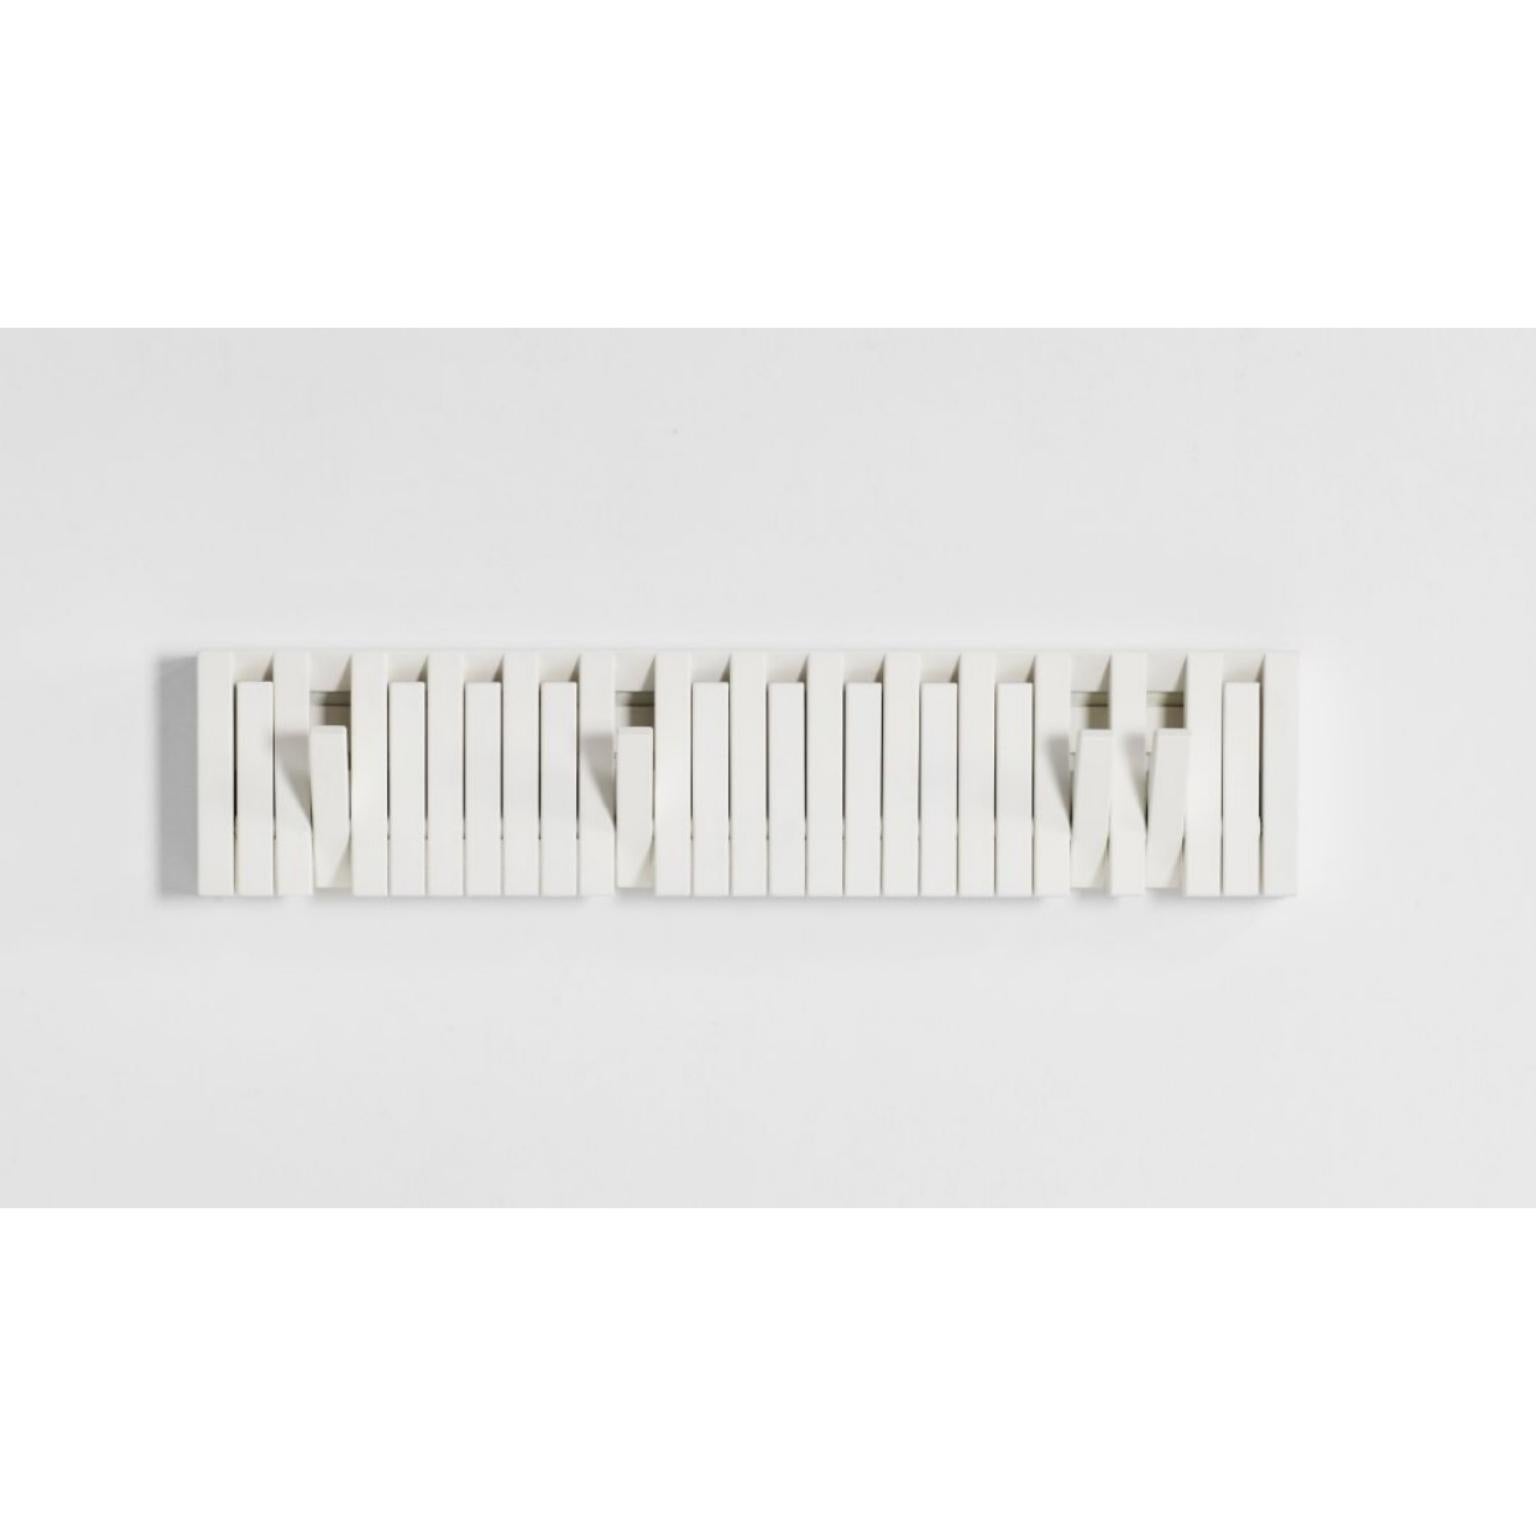 Xylo-Garderobe von Patrick Séha.
Abmessungen: 81 x H 20 cm
MATERIALIEN: Buche, weiß lackiert.

Erhältlich in verschiedenen Holzausführungen.

XYLO ist ein wandmontierter Garderobenständer mit klappbaren Haken, inspiriert von der